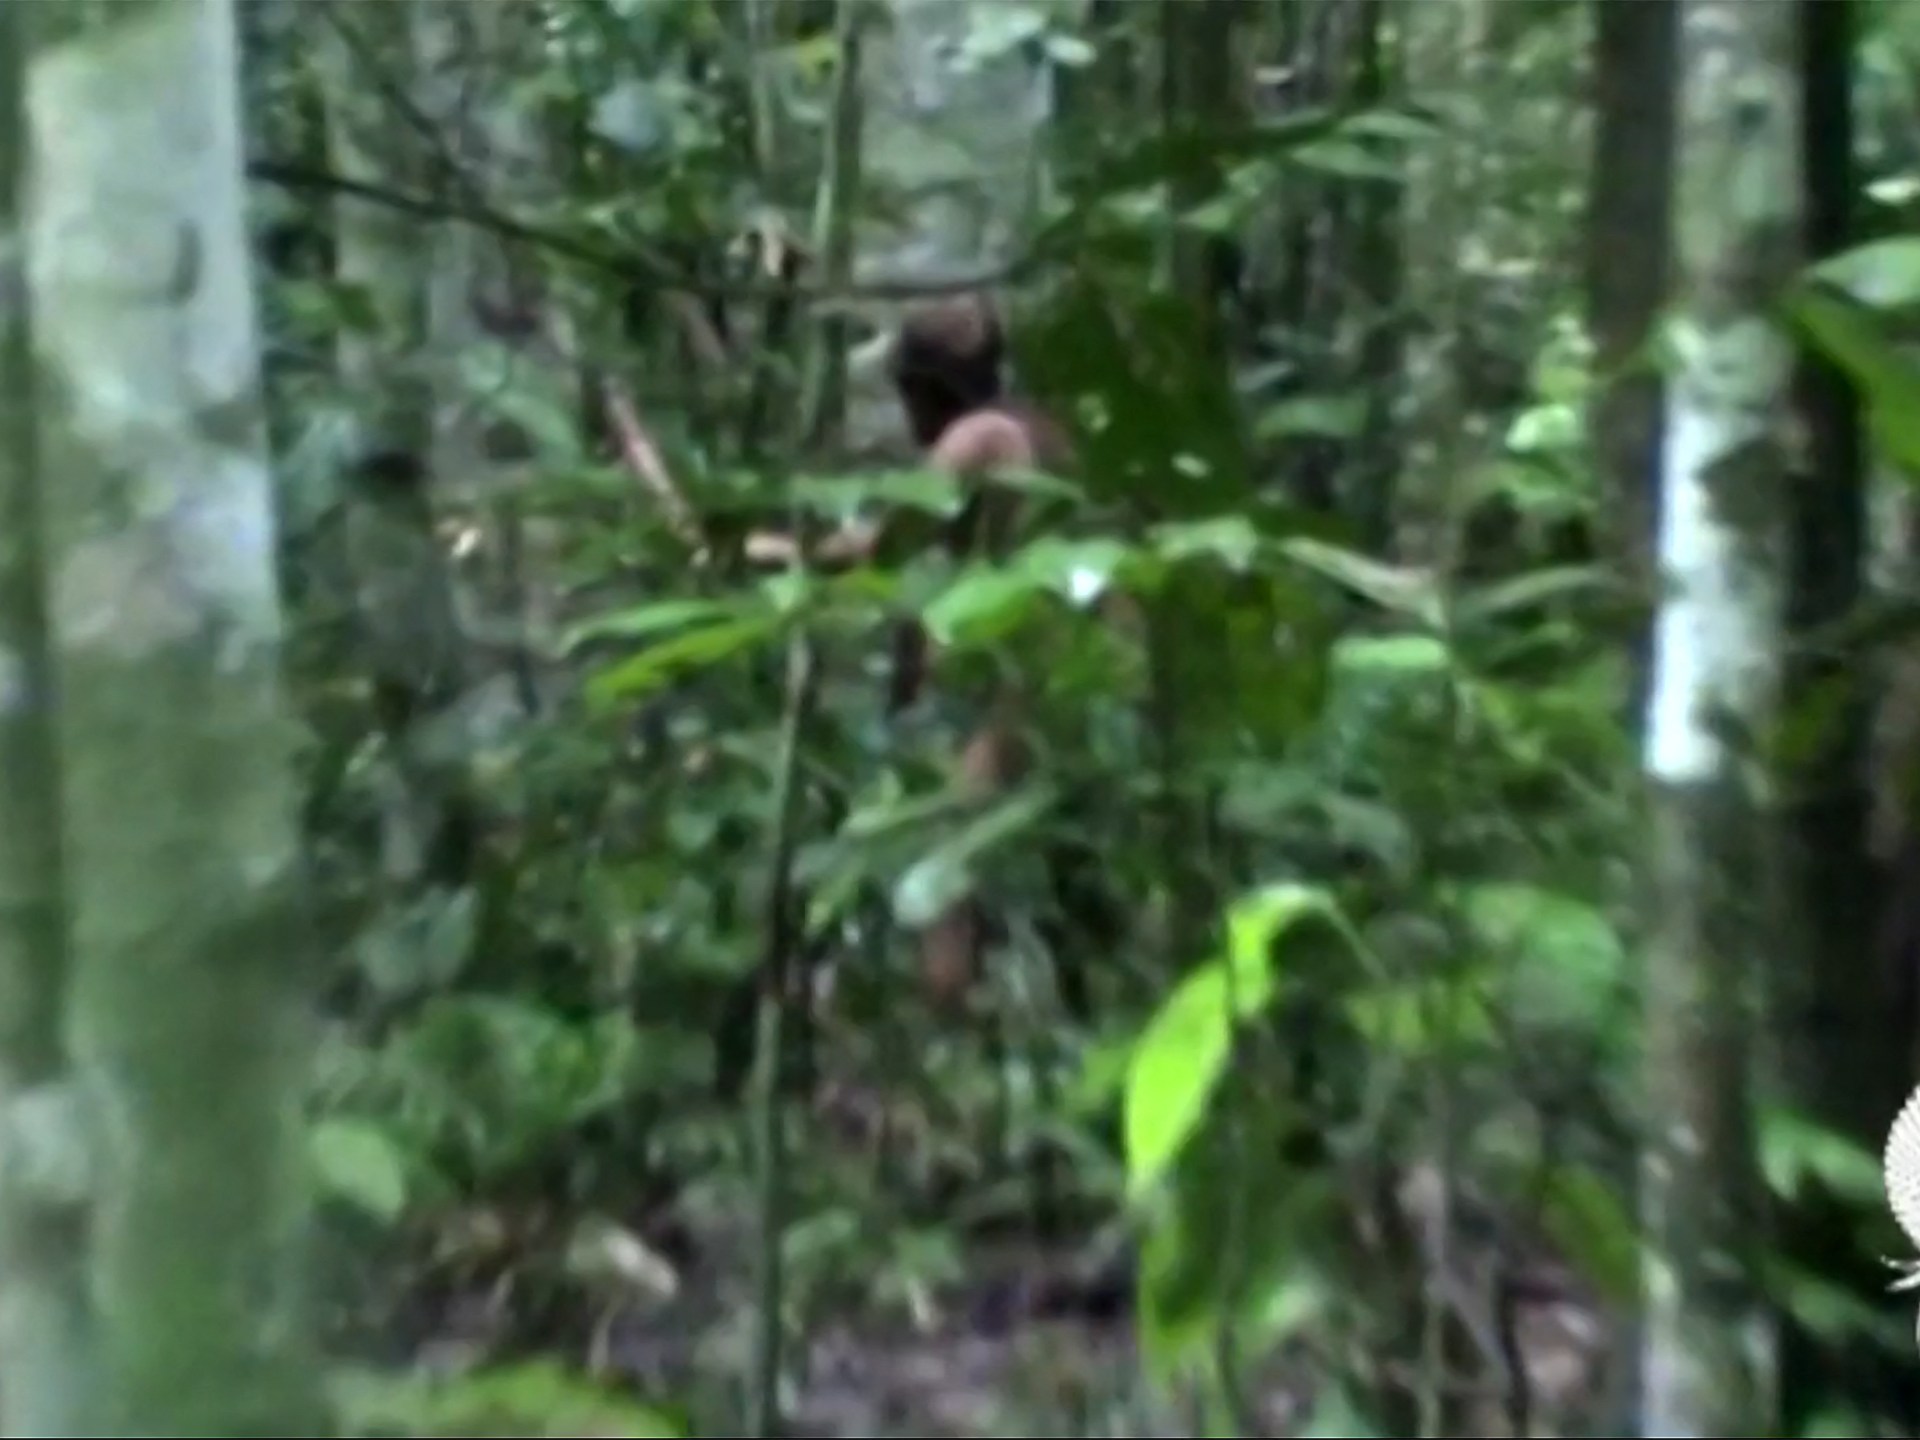 Last member of Brazilian Indigenous community found dead